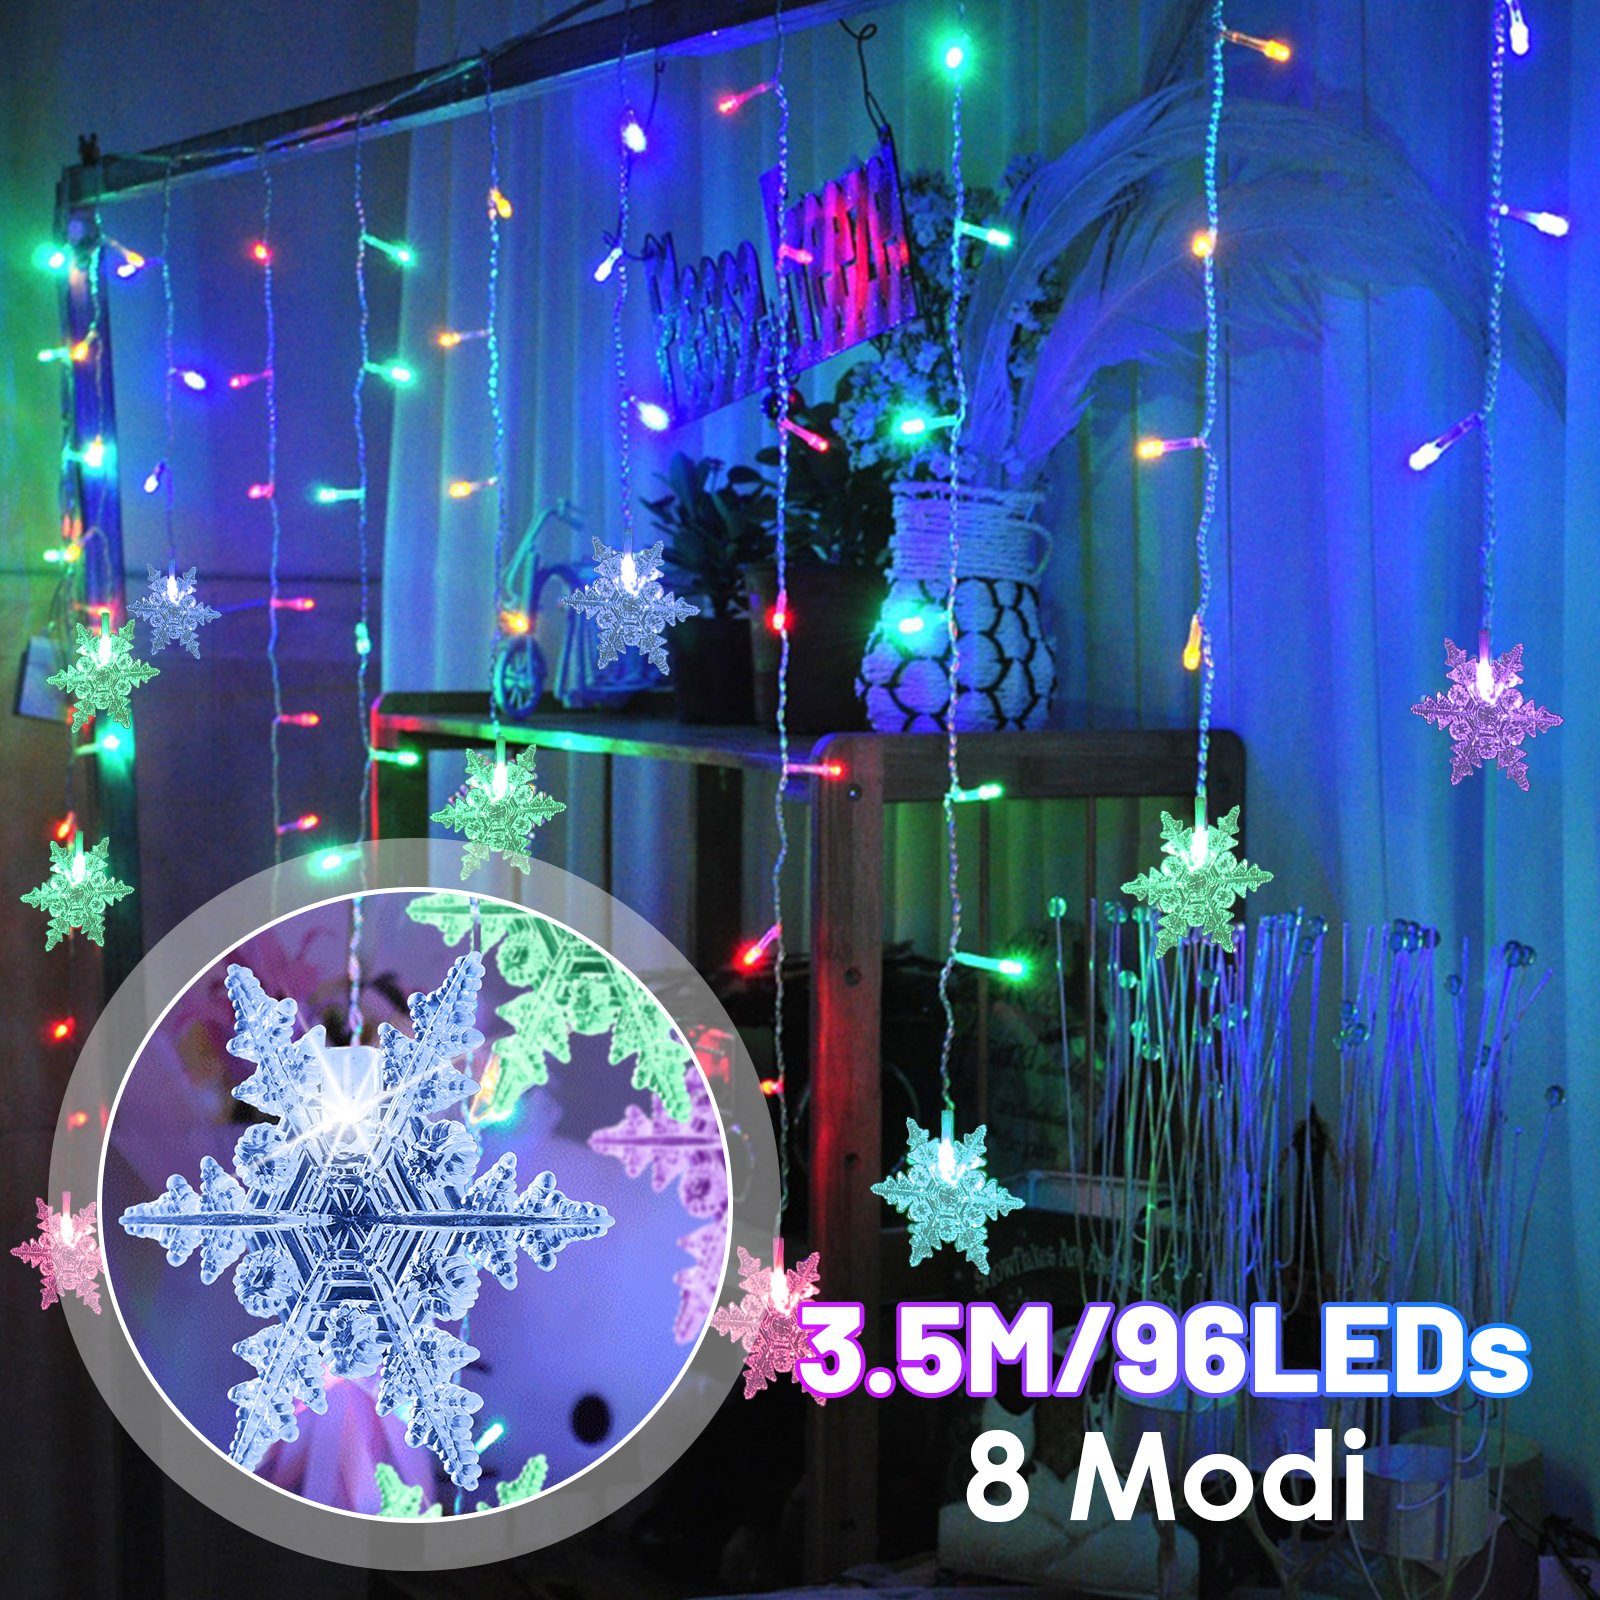 Clanmacy LED-Lichtervorhang WeihnachtenBeleuchtung, Mehrfarbig Vorhang Lichterkette Wasserfest LED Lichterkette für Weihnachten, Partydekoration, Innenbeleuchtung Bunt